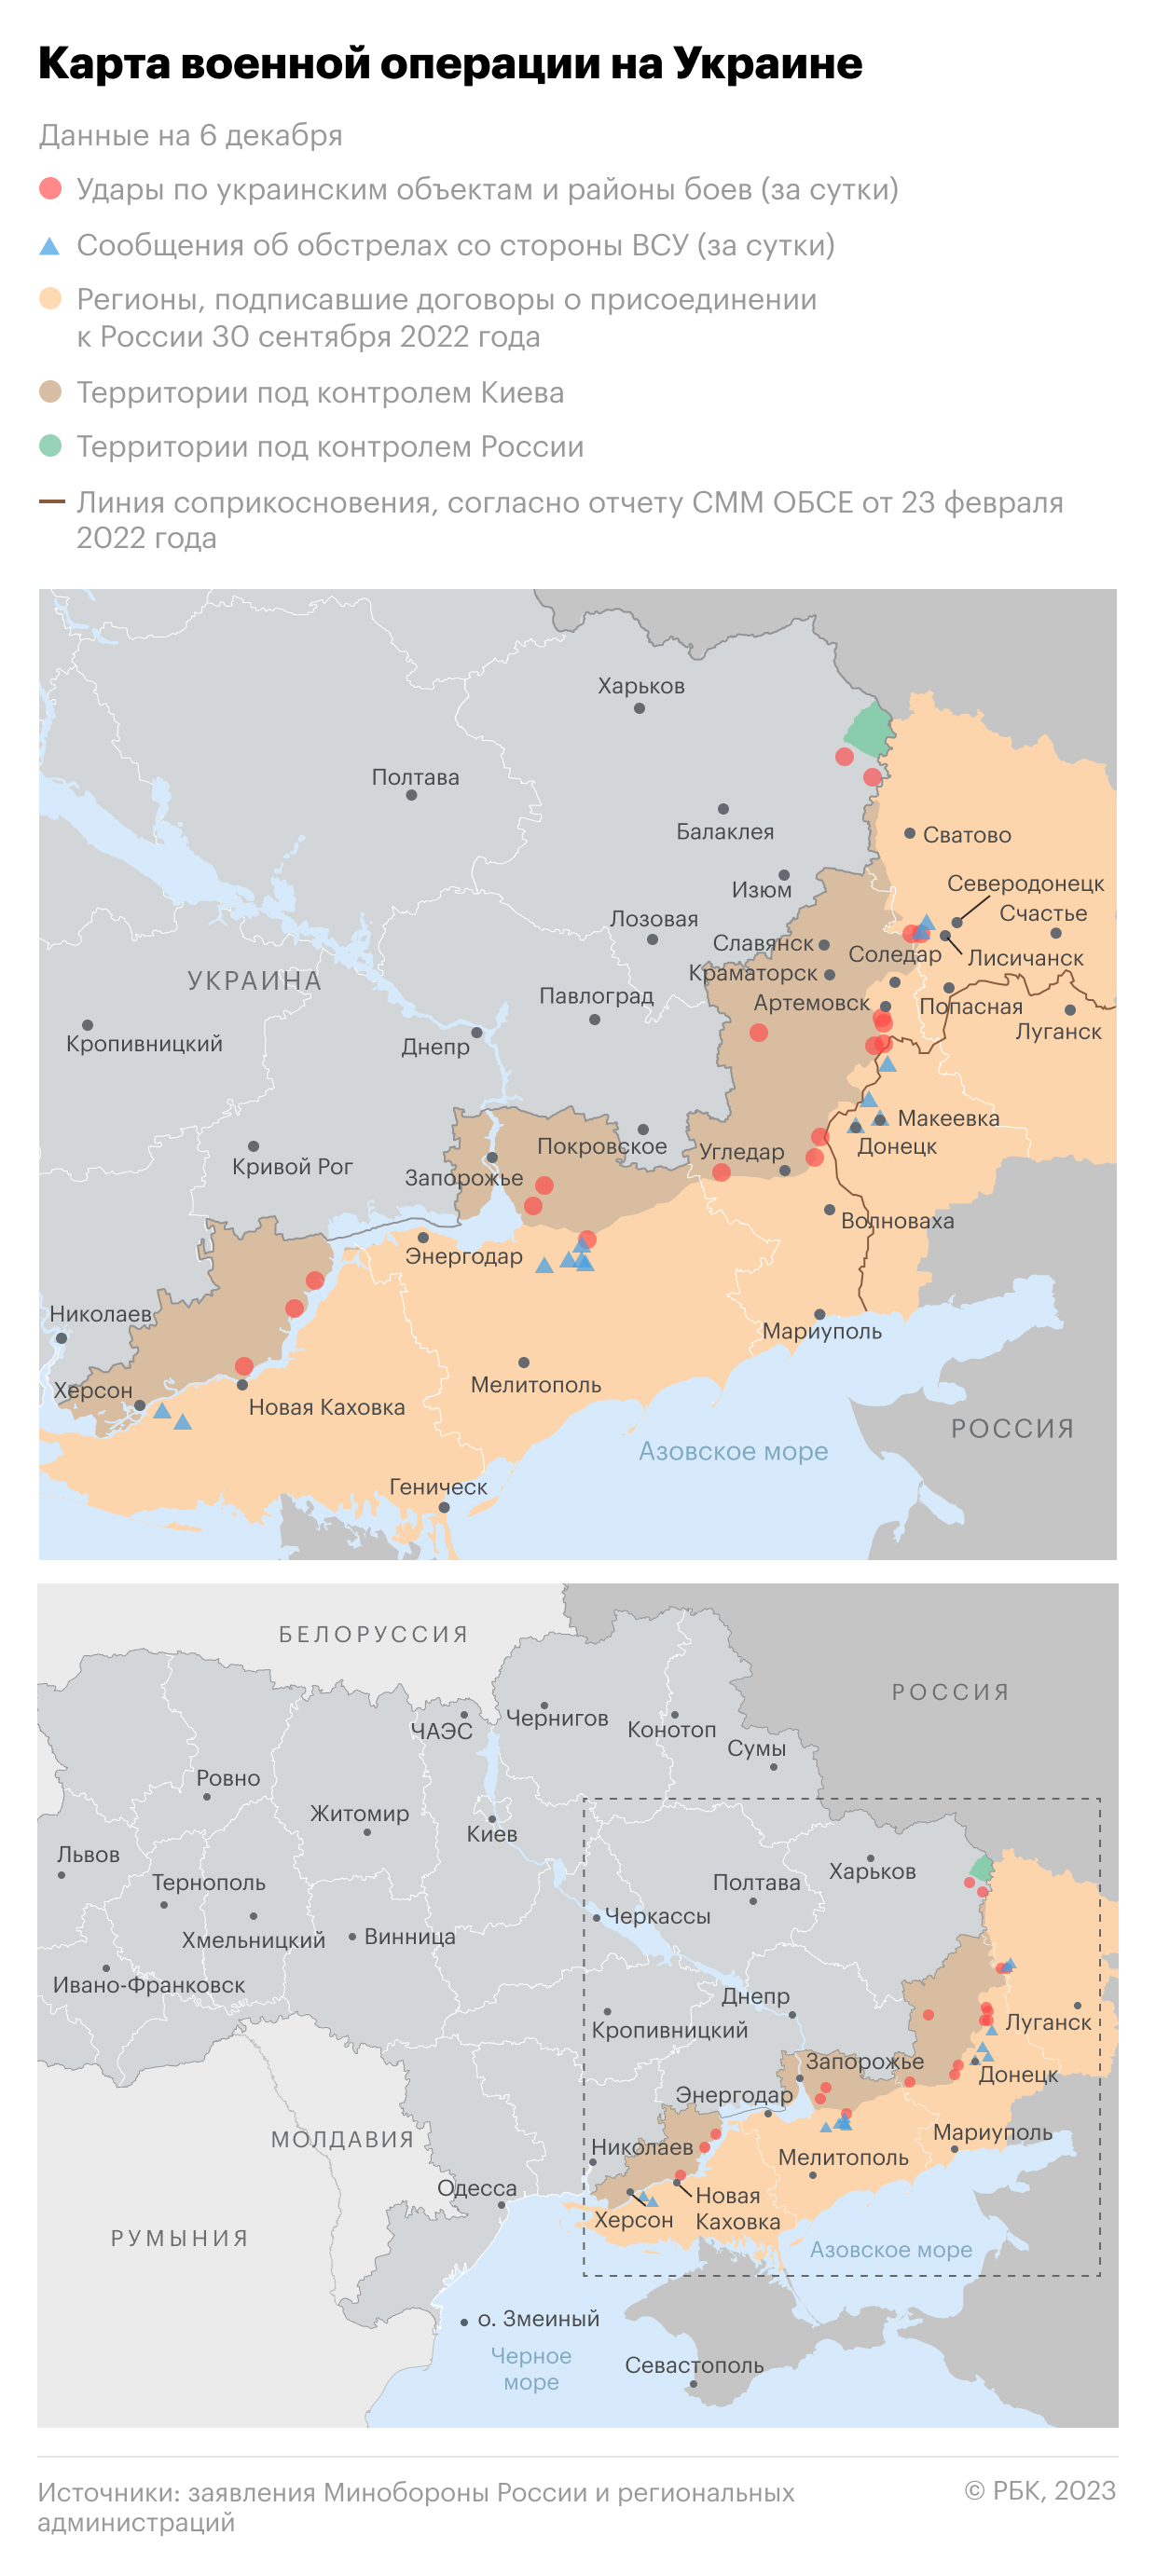 Военная операция на Украине. Карта на 6 декабря